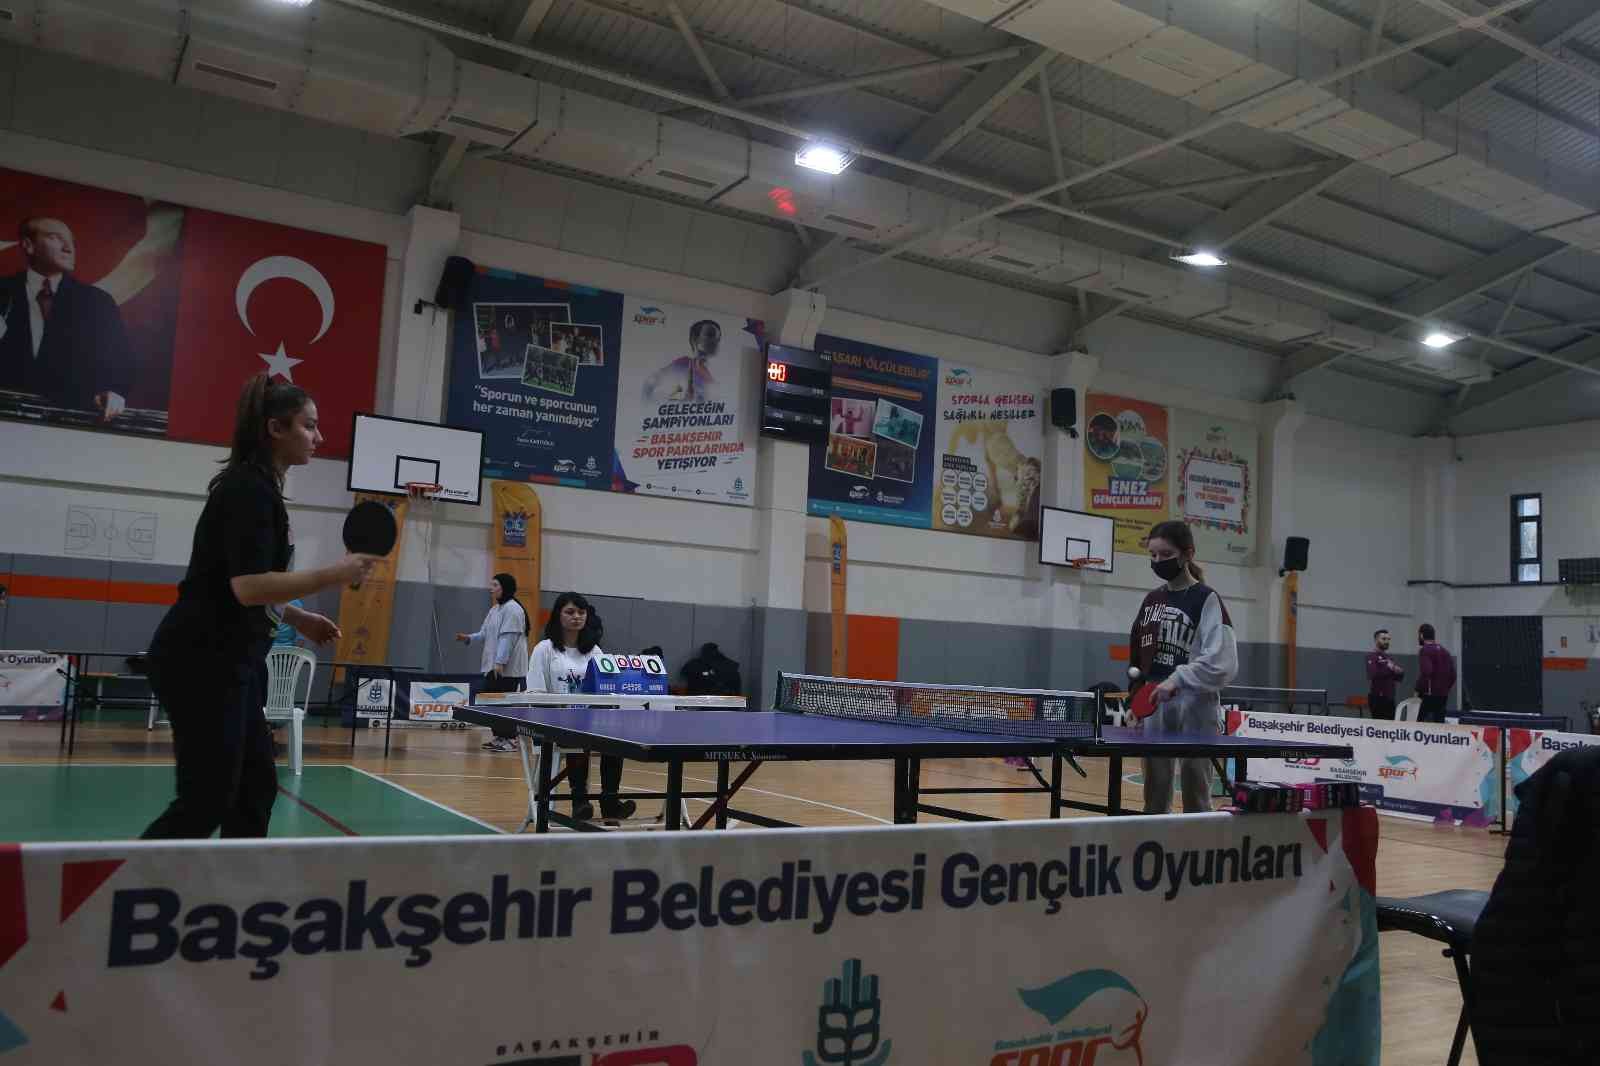 İstanbul gençlik oyunlarında masa tenisi heyecanı başladı #istanbul